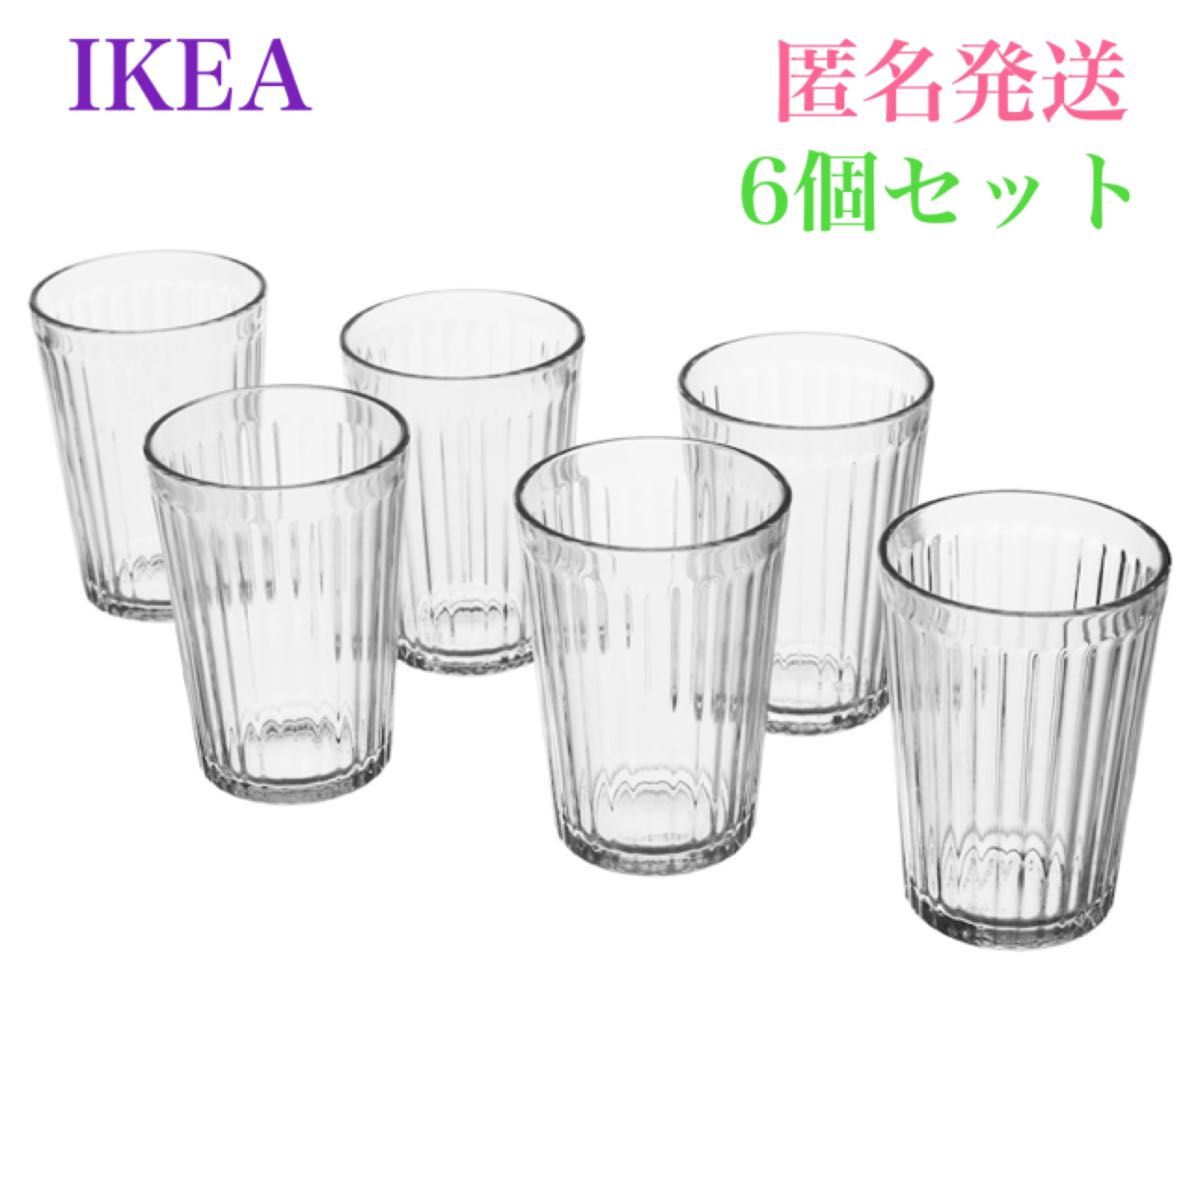 【新品・未使用】IKEA ヴァルダーゲン グラス イケア クリアガラス 200ml 6個セット ガラスコップ シンプル コンパクト